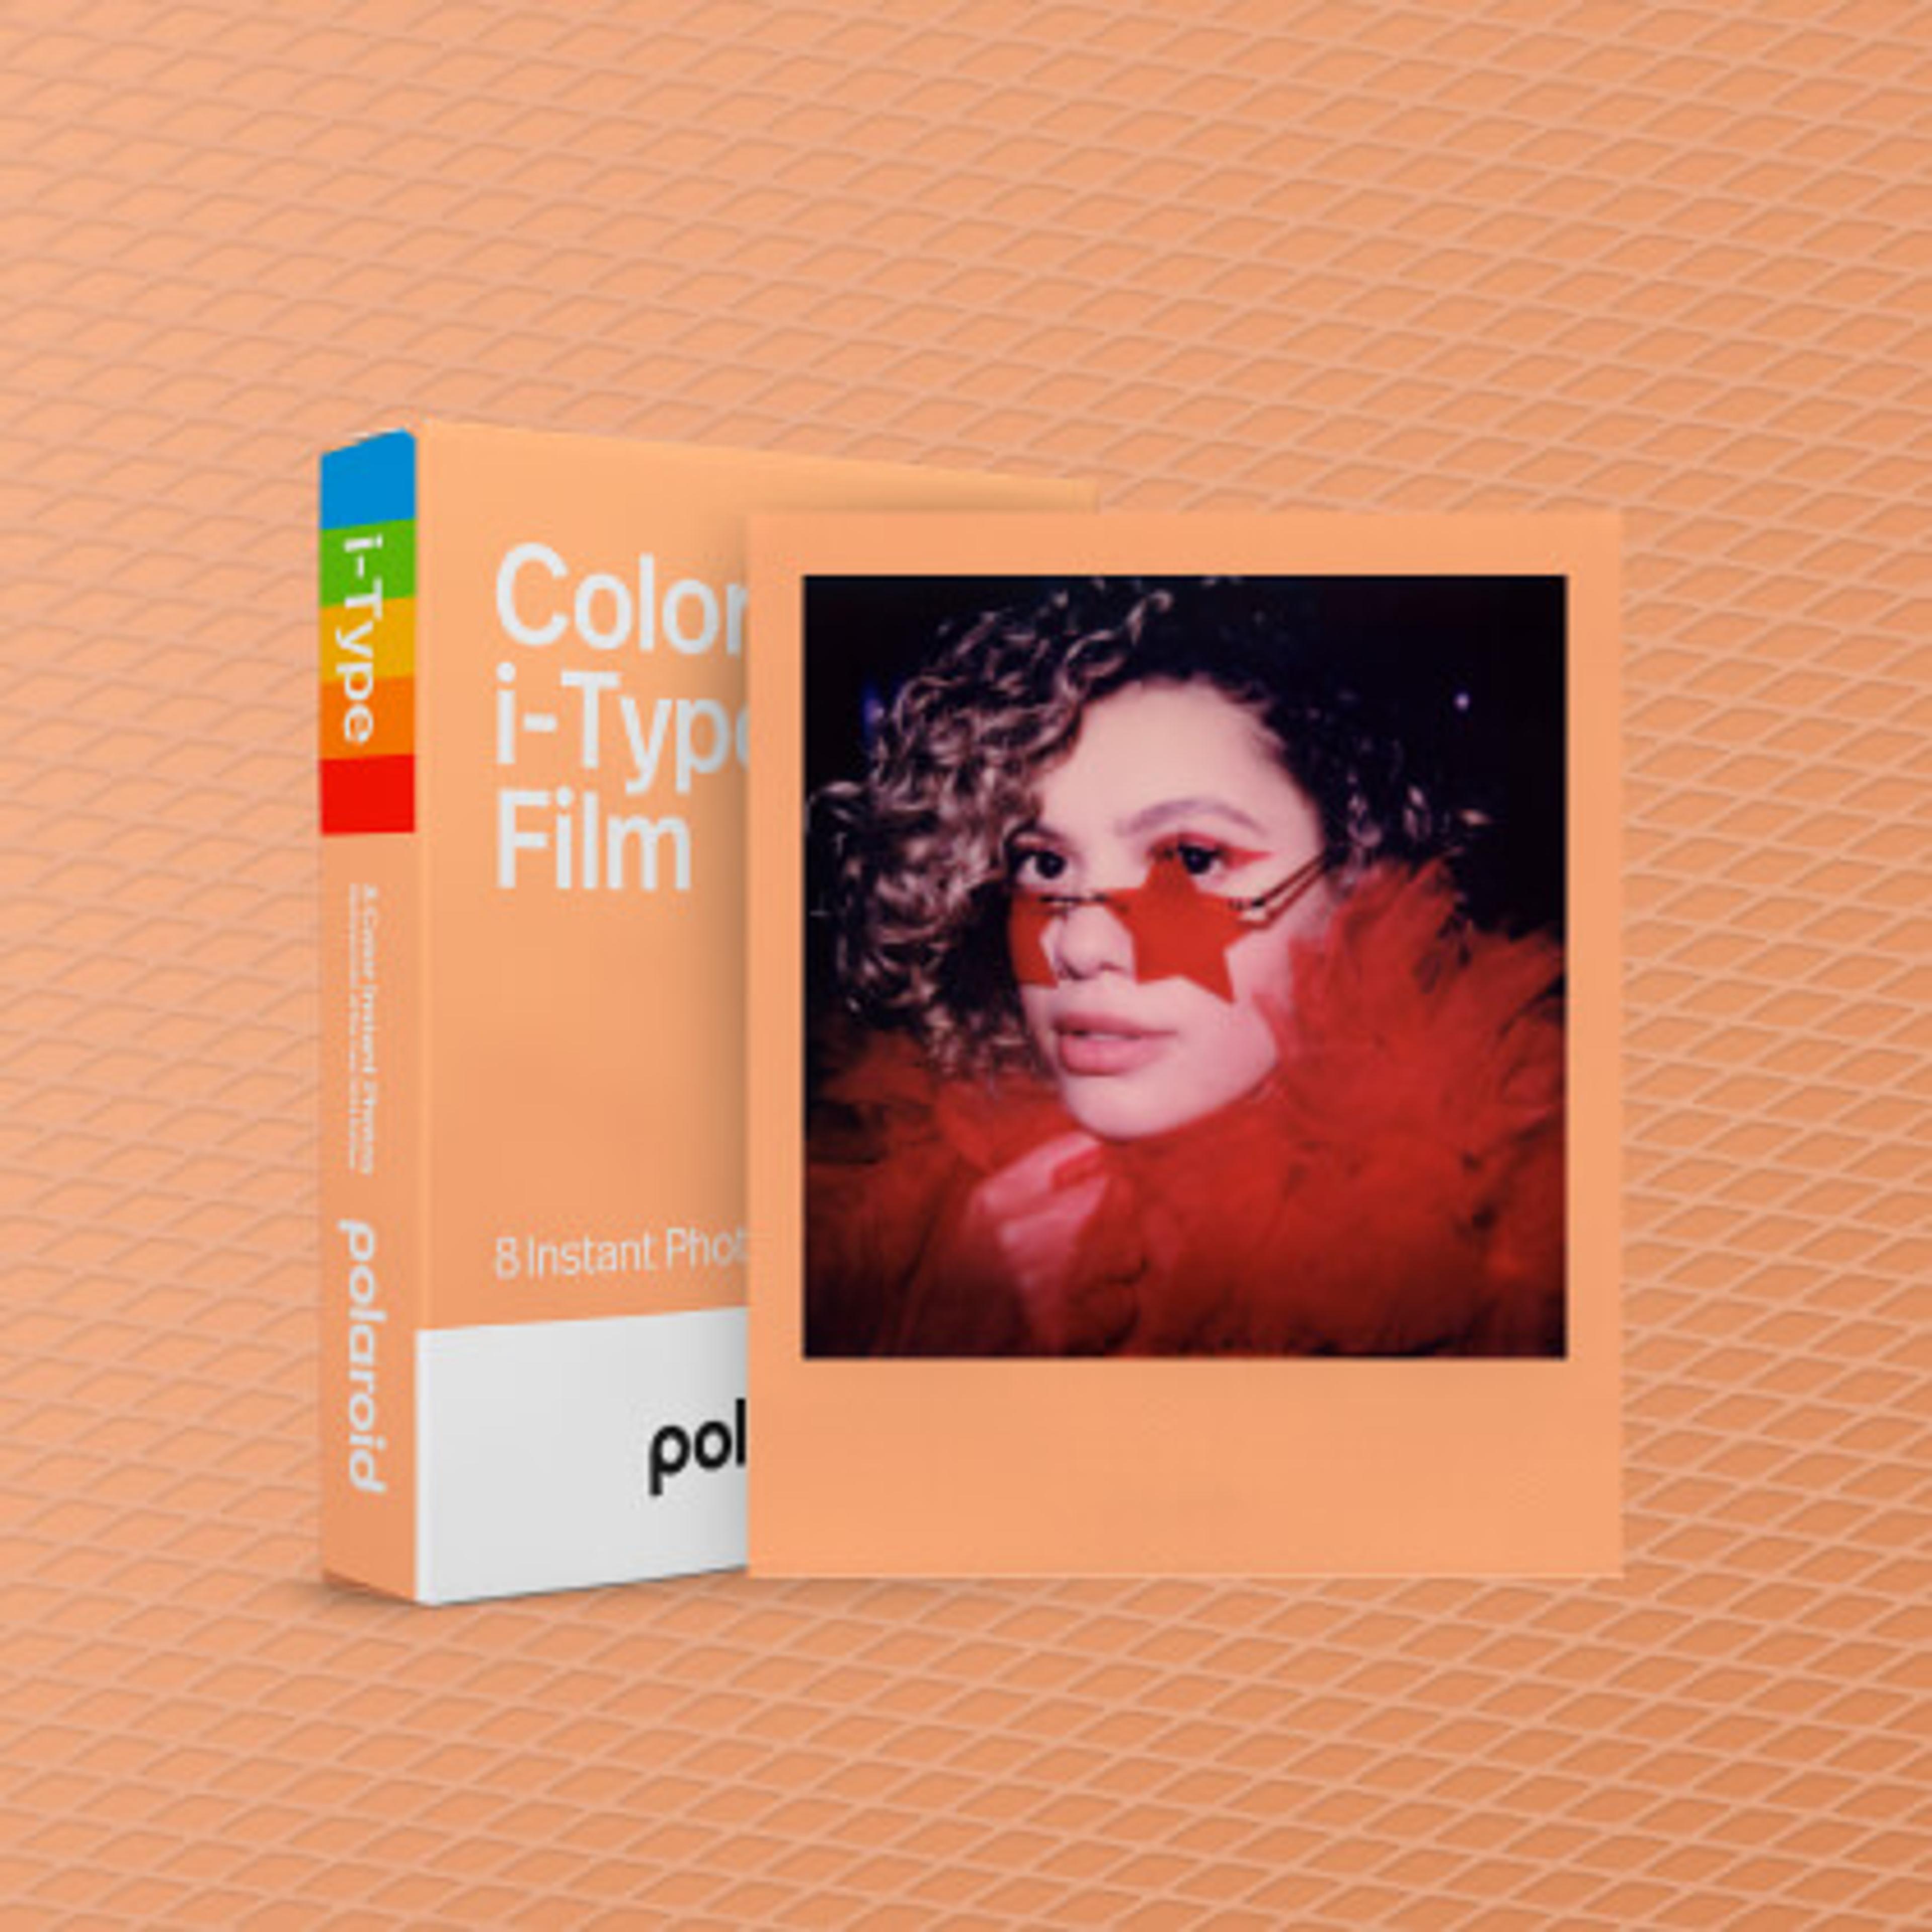 Polaroid x Pantone